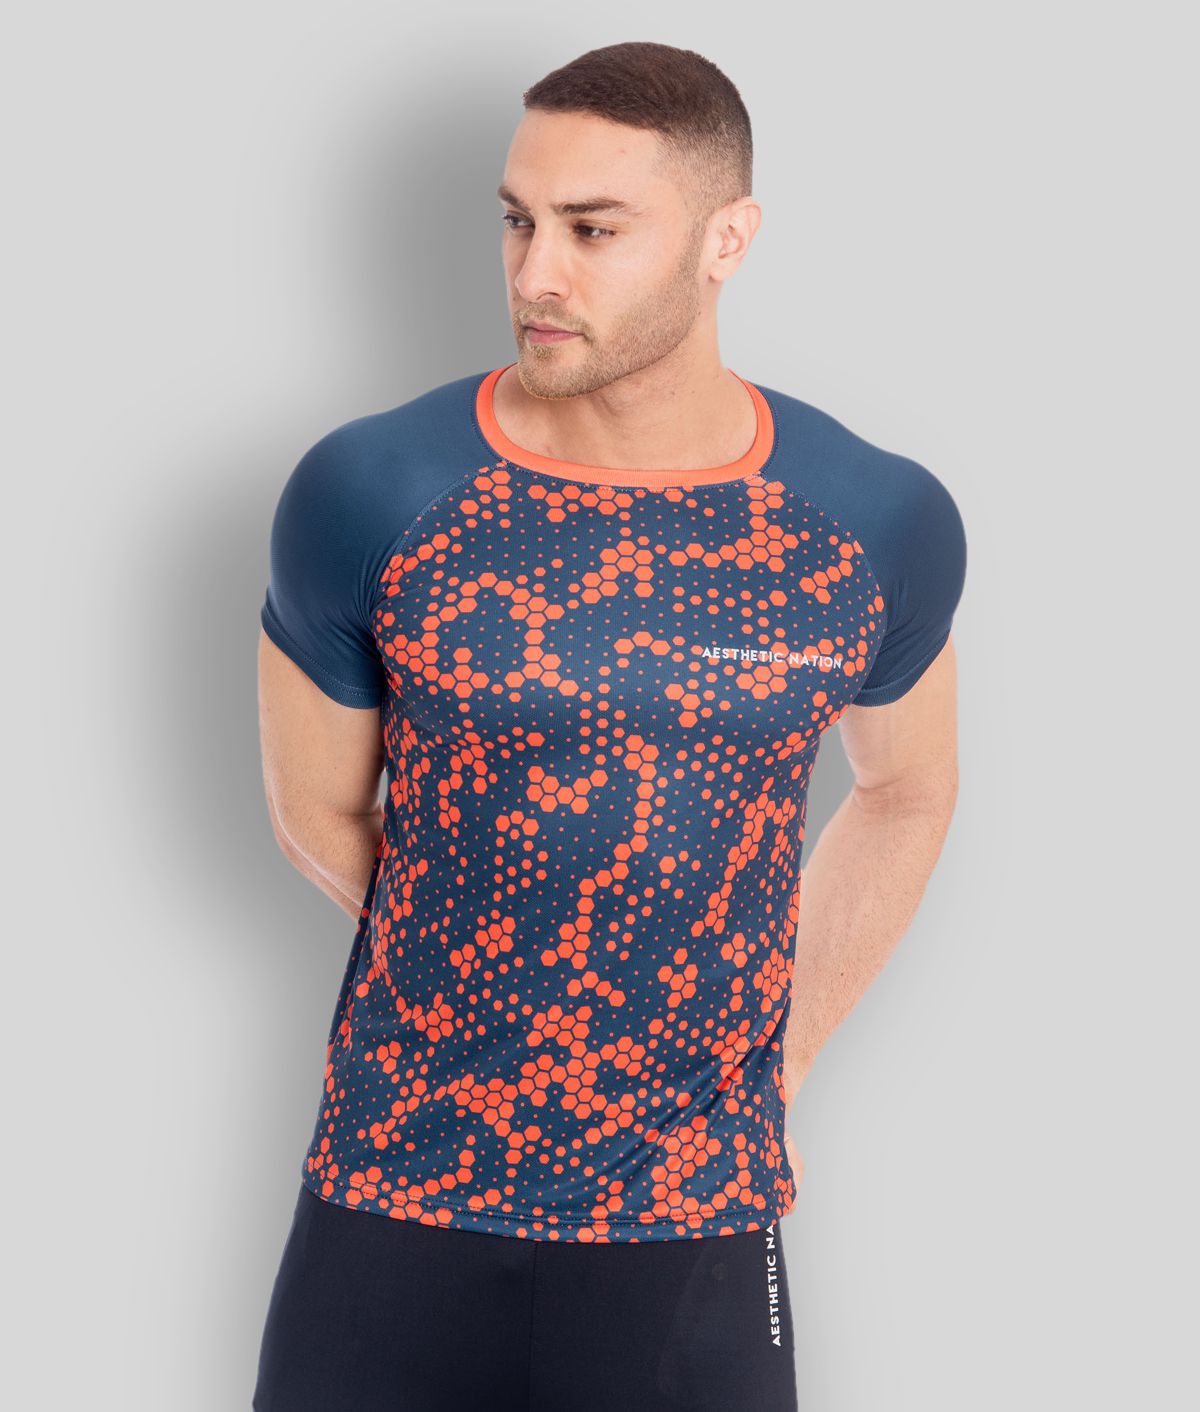     			Aesthetic Nation - Navy Polyester Regular Fit  Men's T-Shirt ( Pack of 1 )